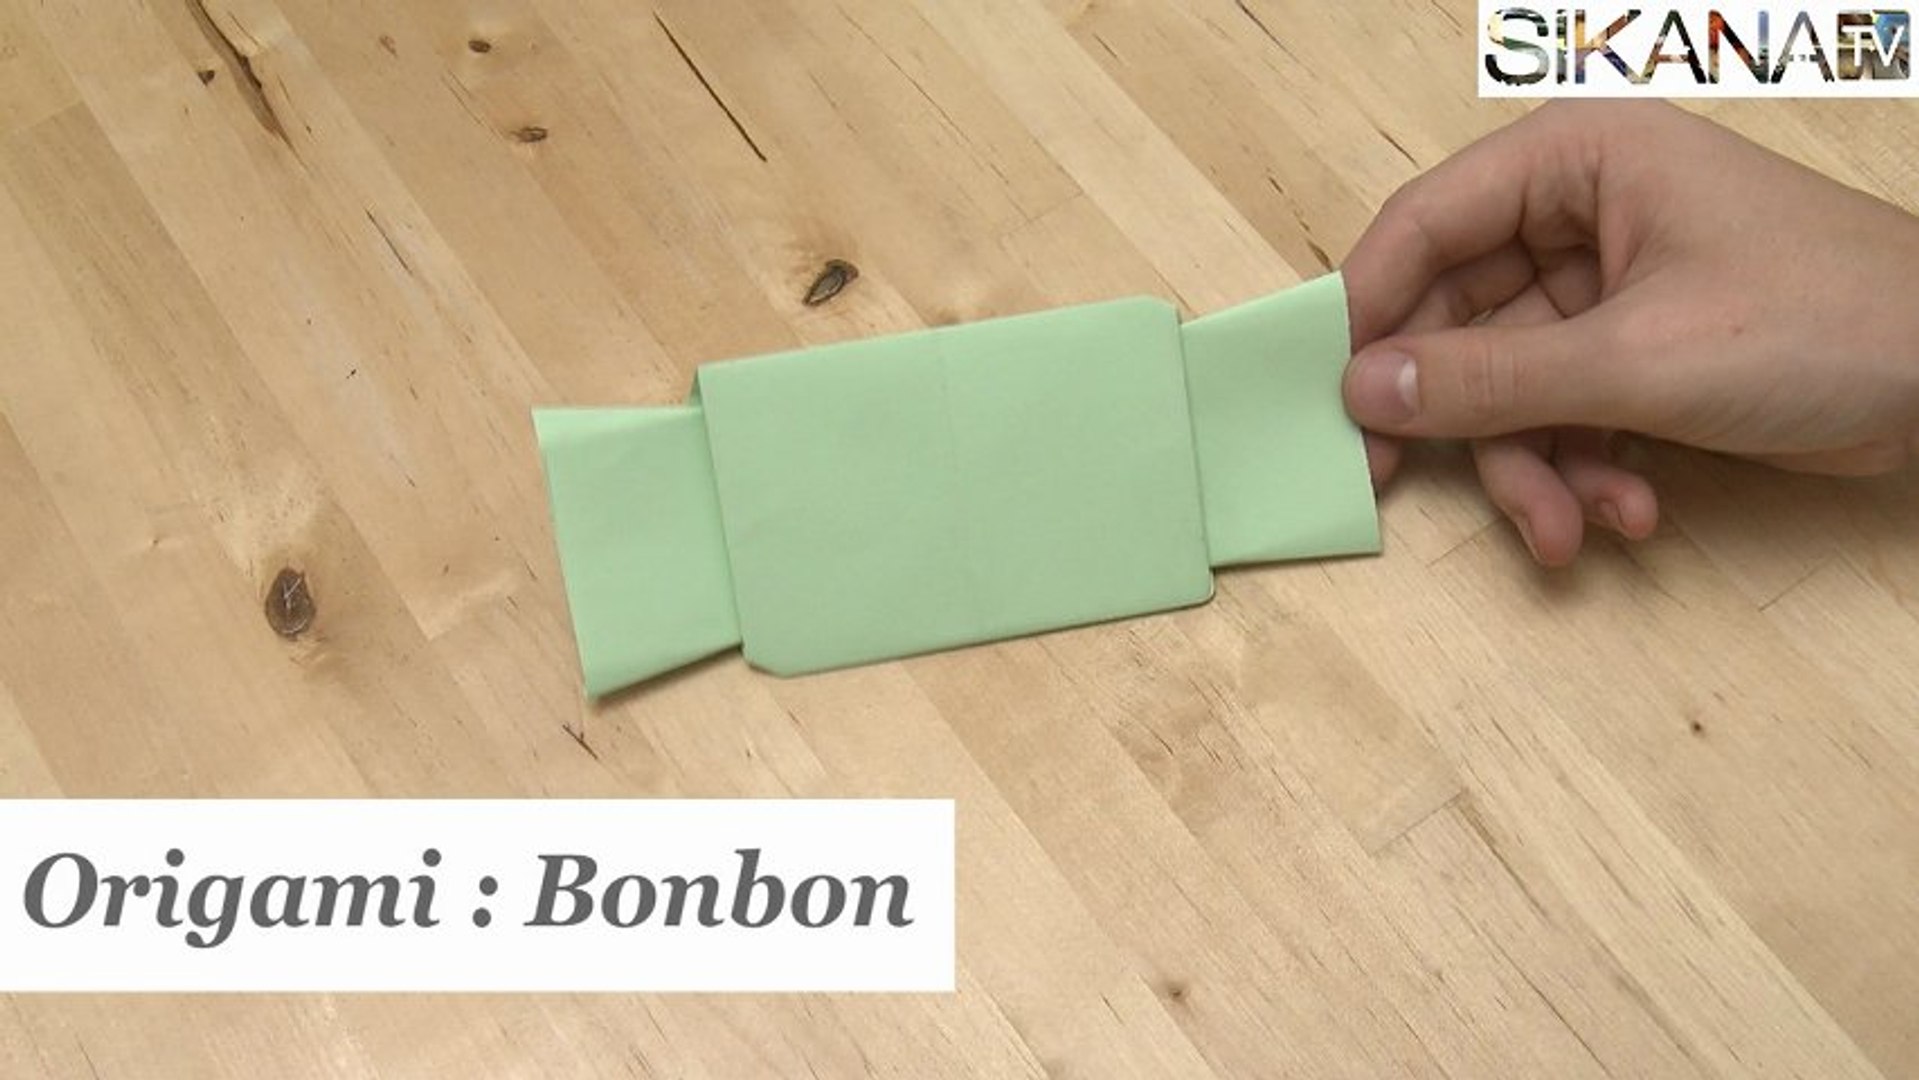 Origami : Comment faire un bonbon en papier ? - HD - Vidéo Dailymotion